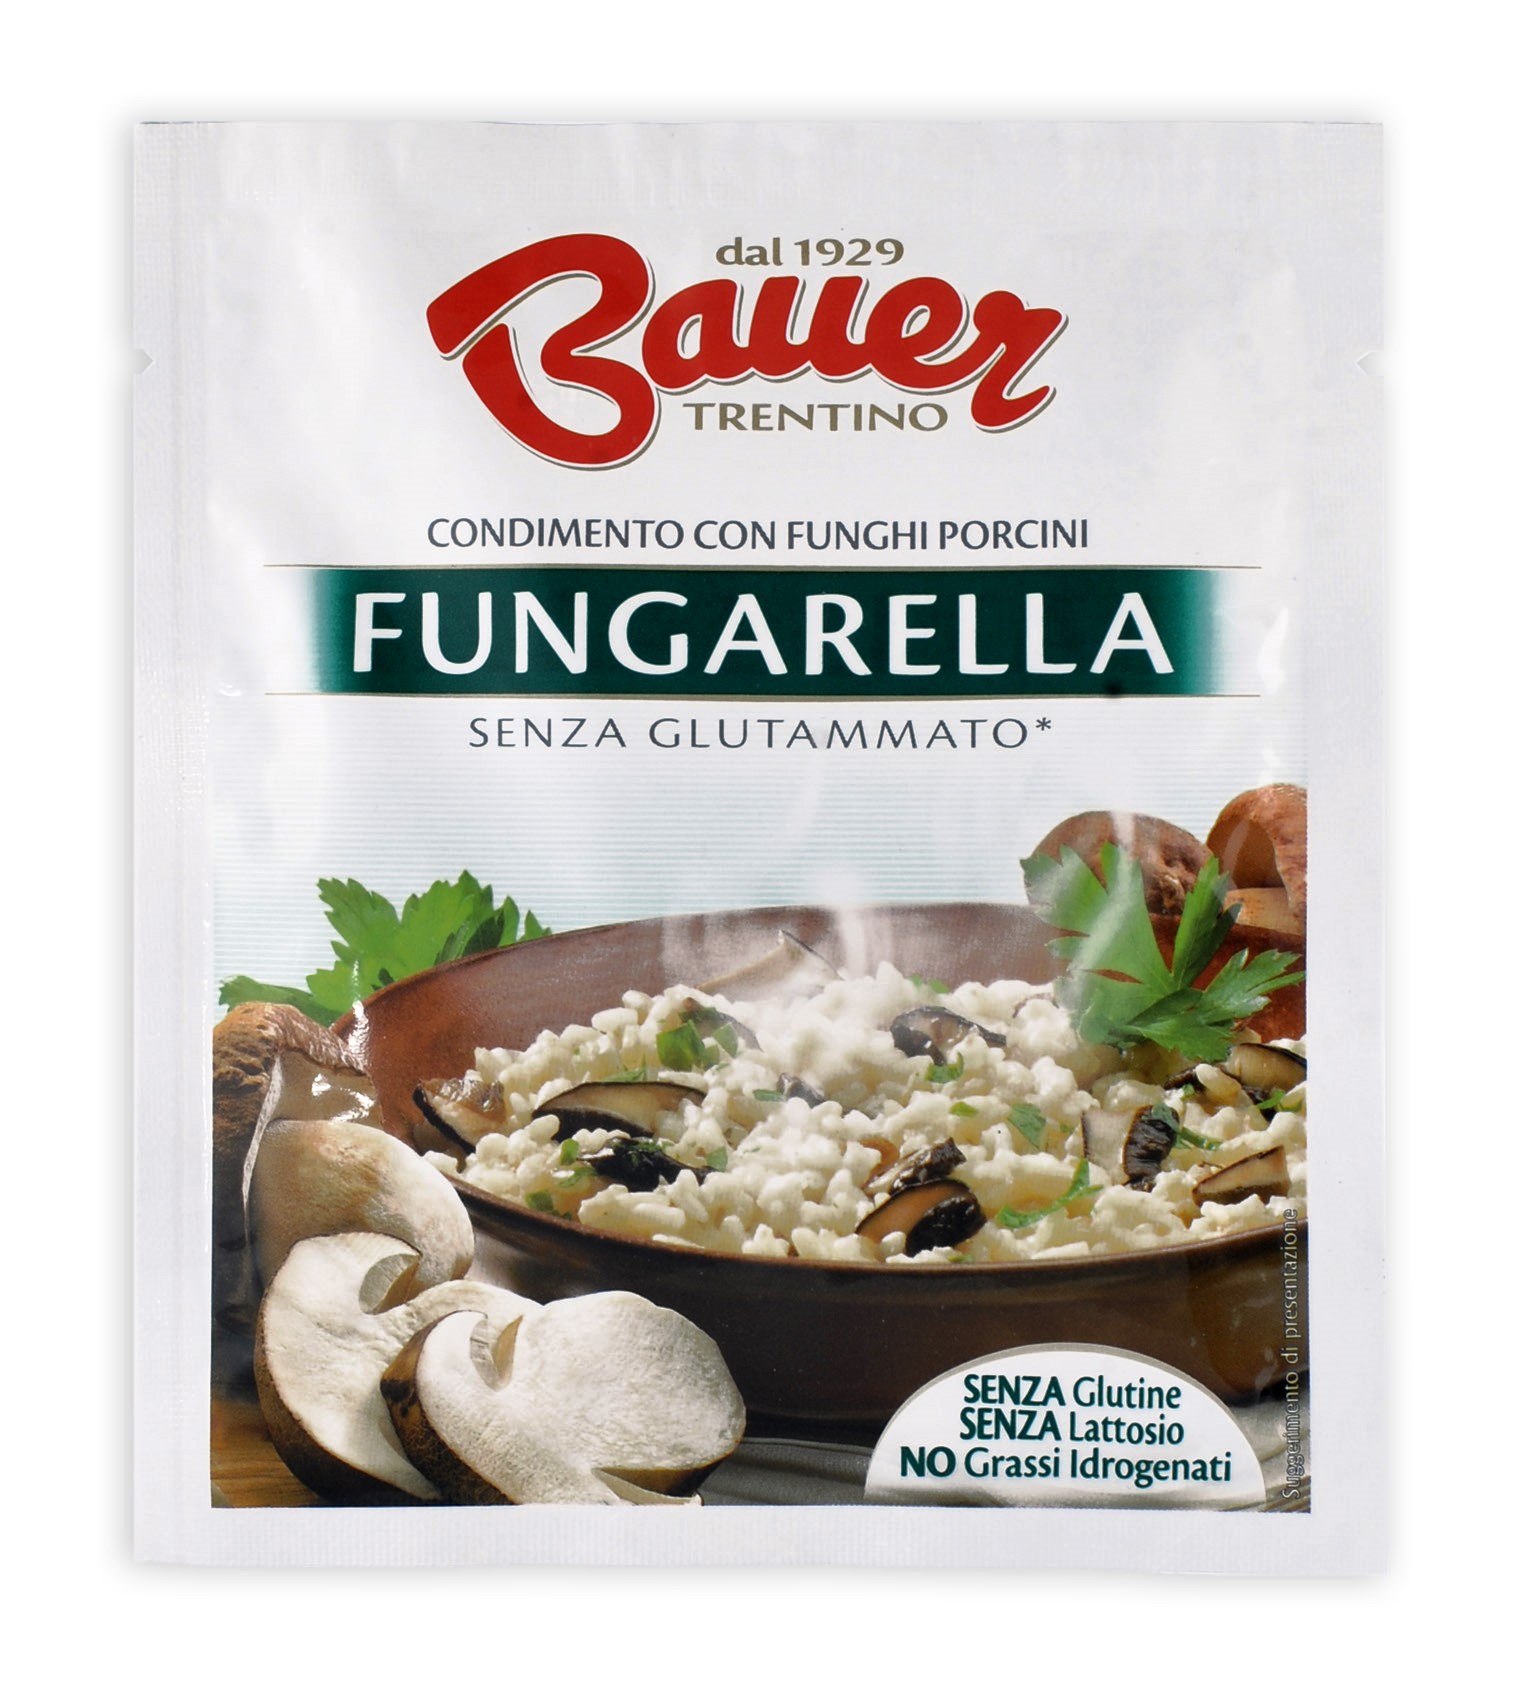 Fungarella Bauer